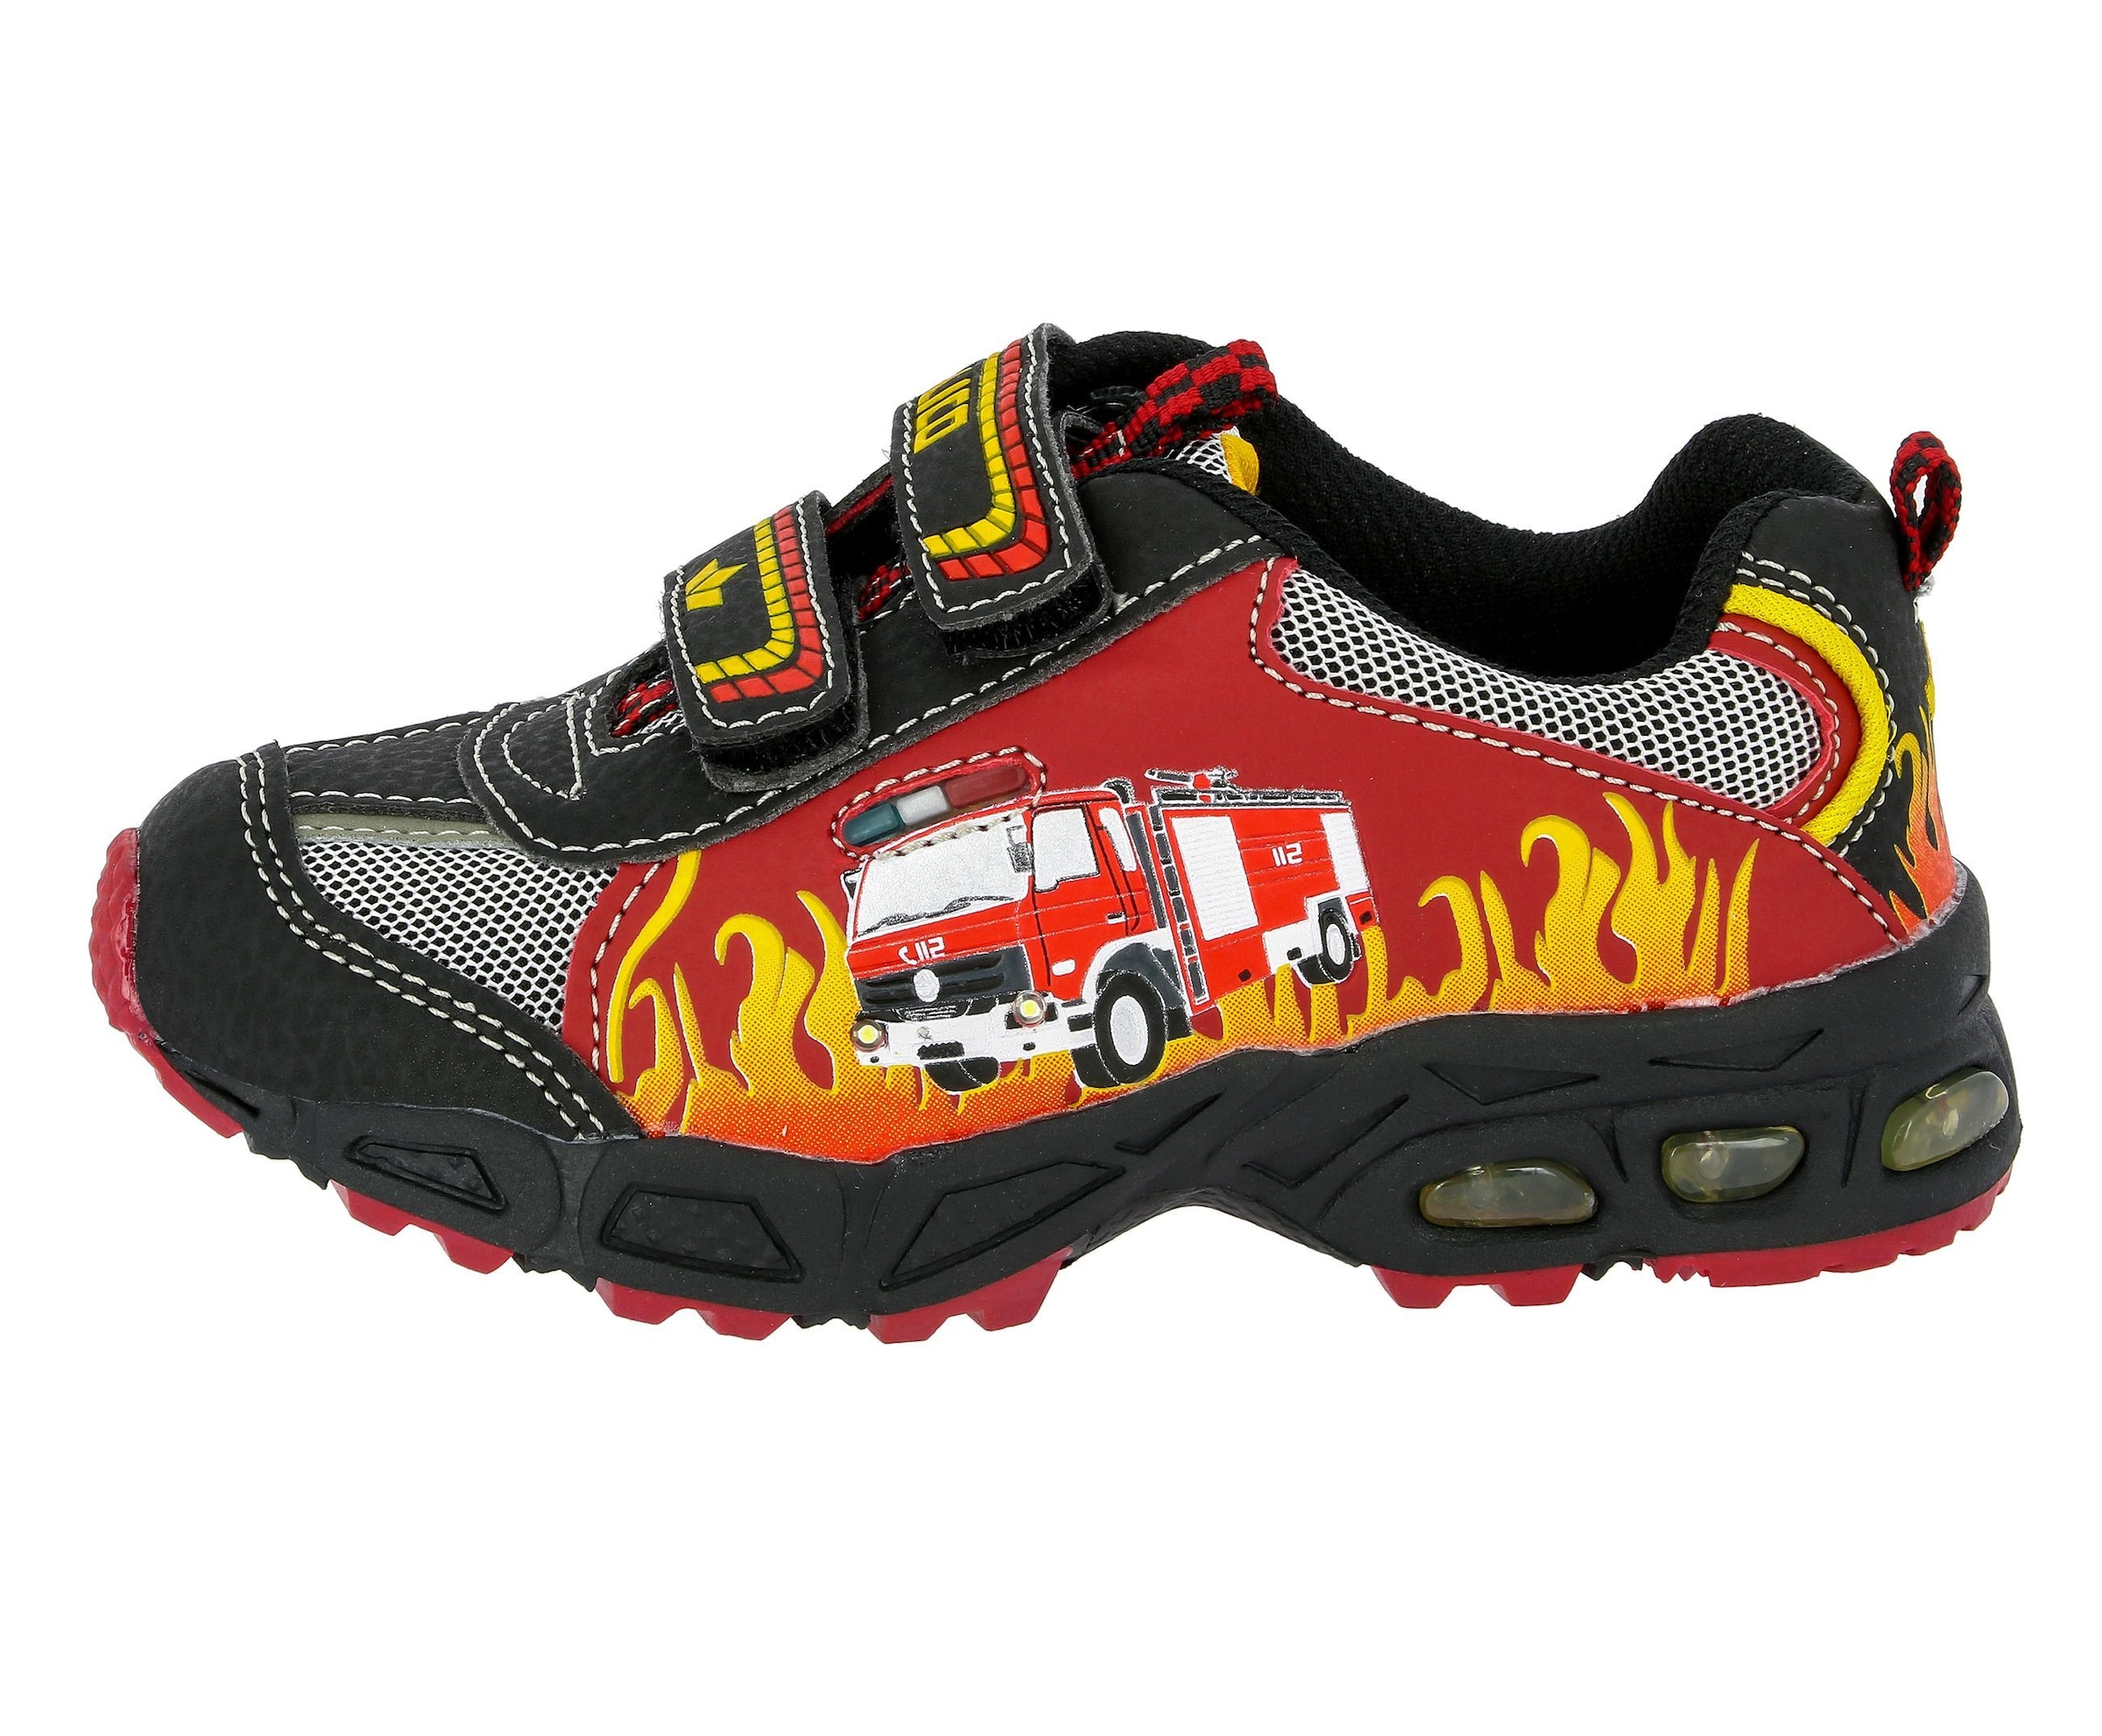 Lico Sneaker »Kinderschuh Hot V Blinky«